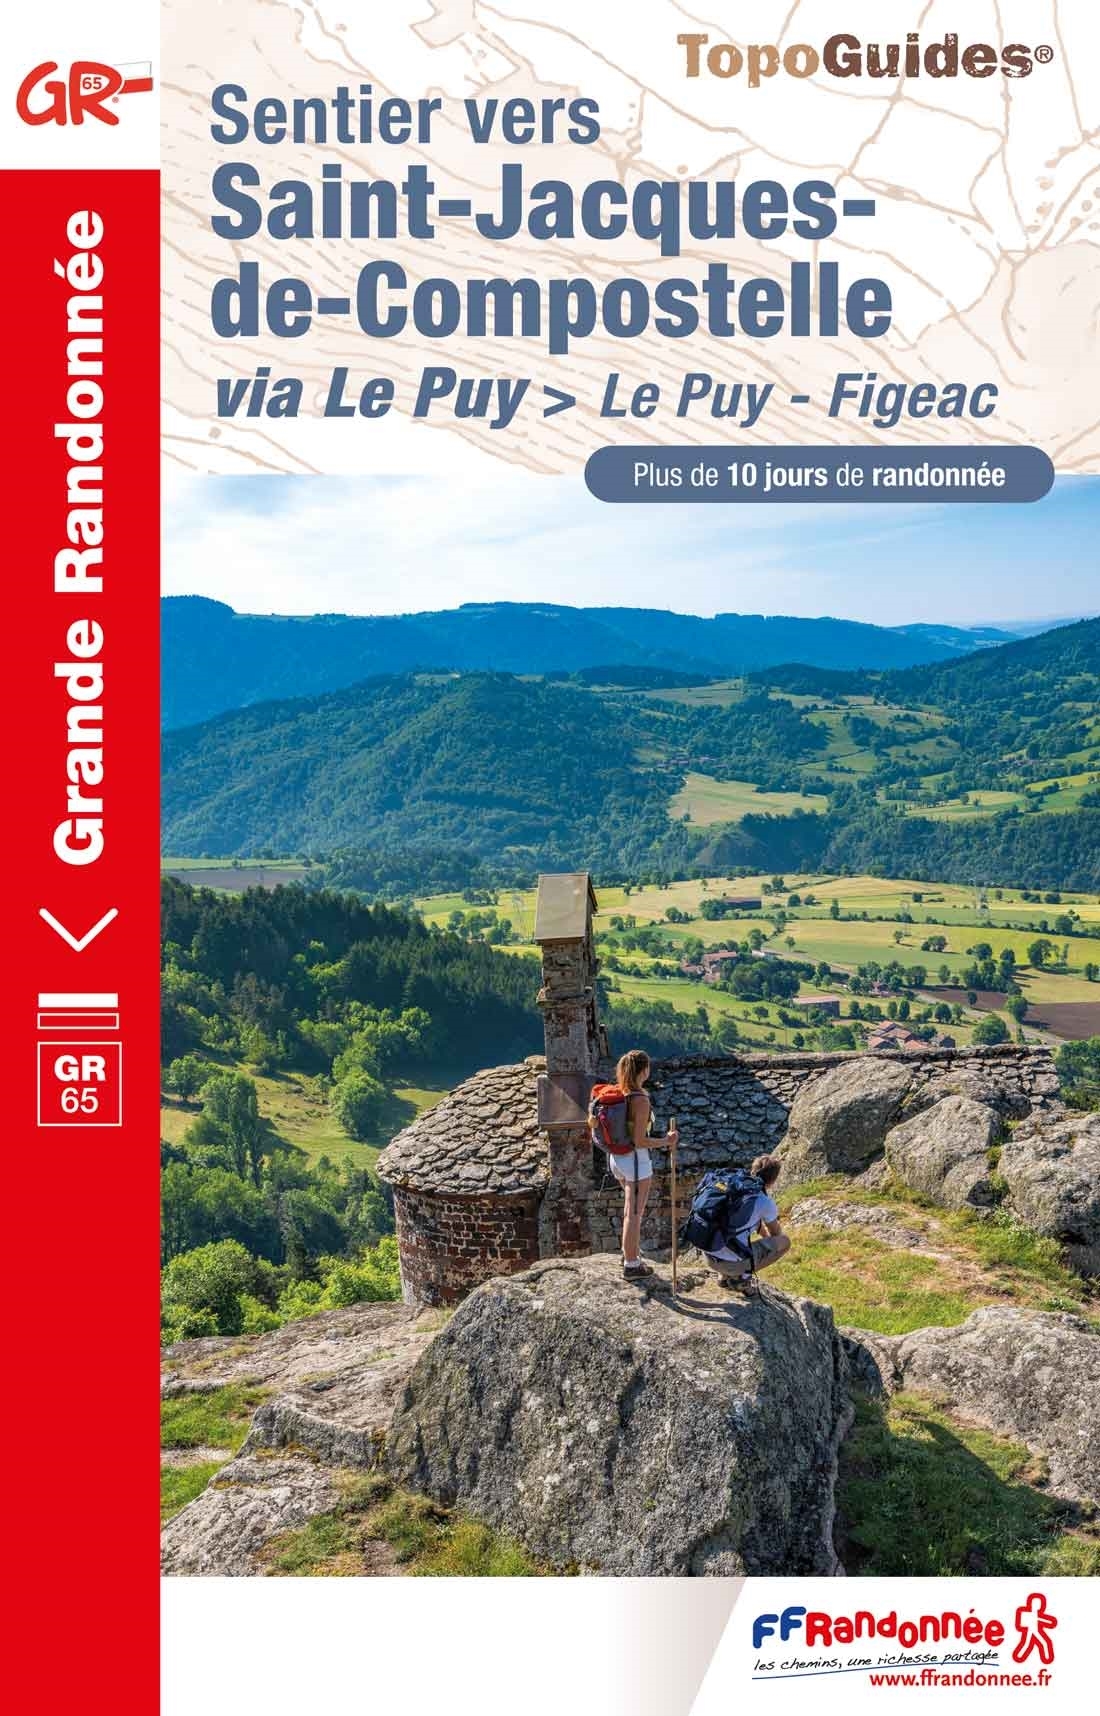 Online bestellen: Wandelgids - Pelgrimsroute 651 Sentier vers Saint-Jacques-de-Compostelle Le Chemin du Puy: Le Puy - Figeac GR65 | FFRP